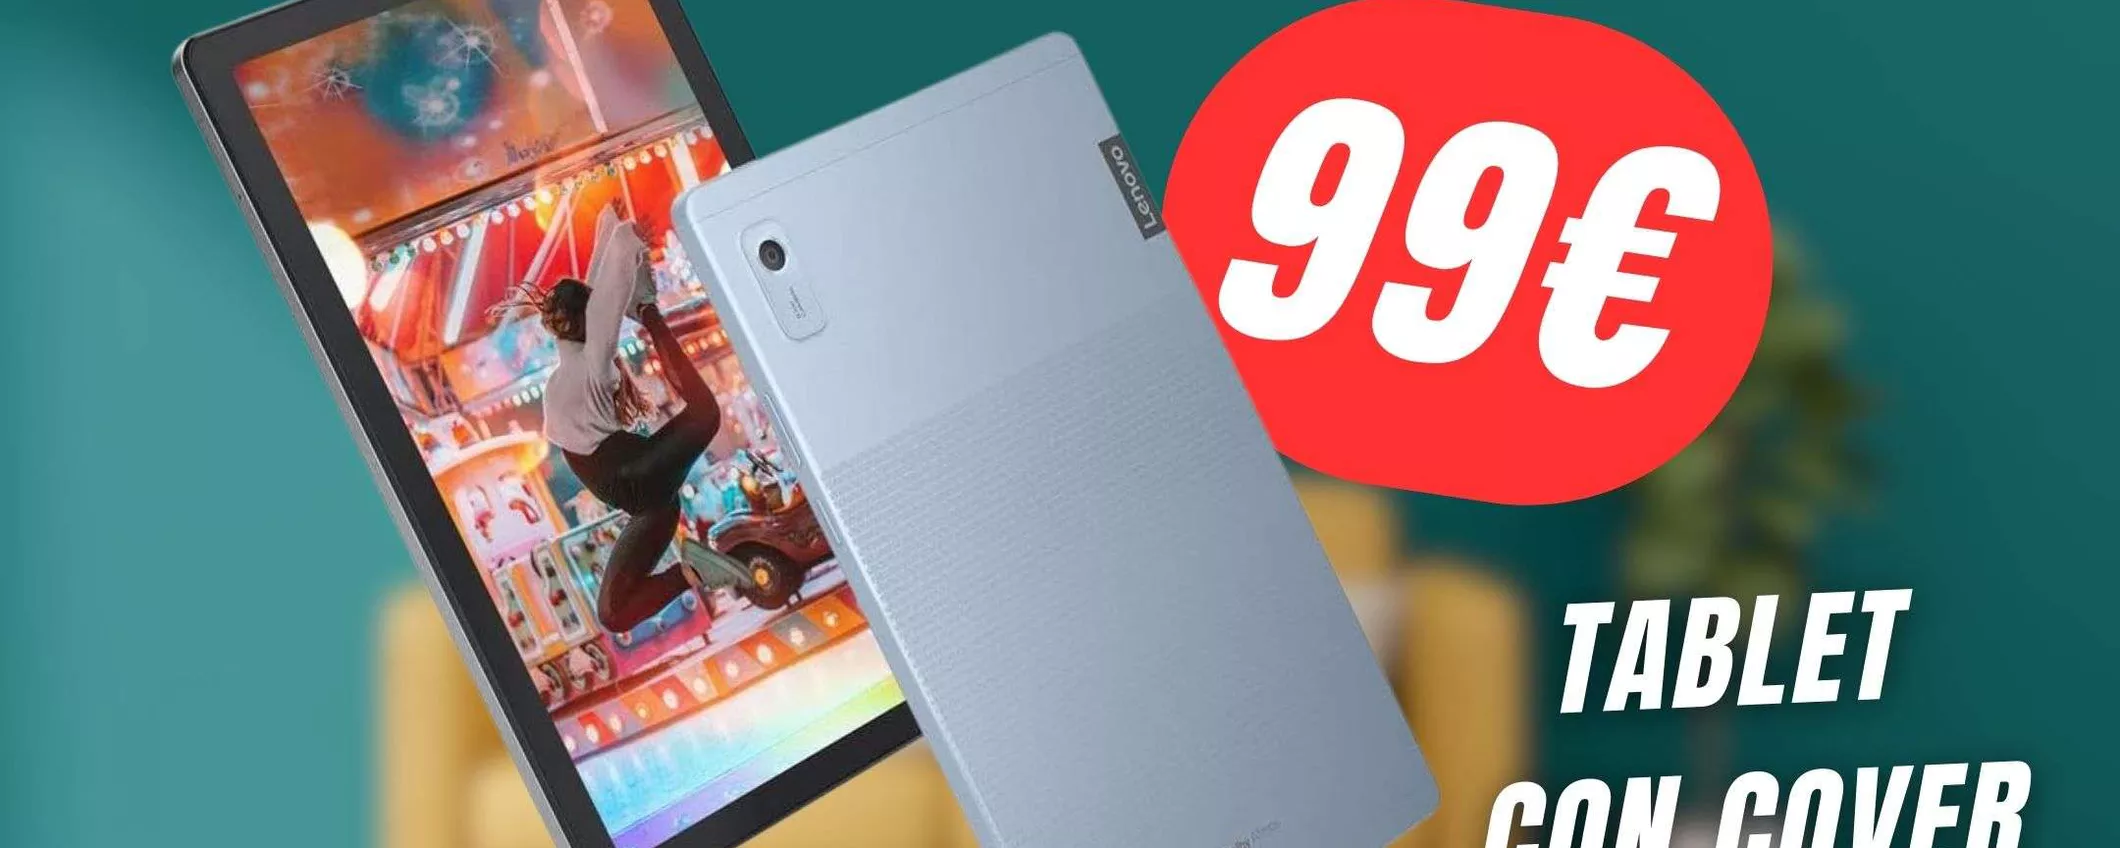 Questo Tablet di Lenovo costa meno di 100€ (e ha la COVER inclusa)